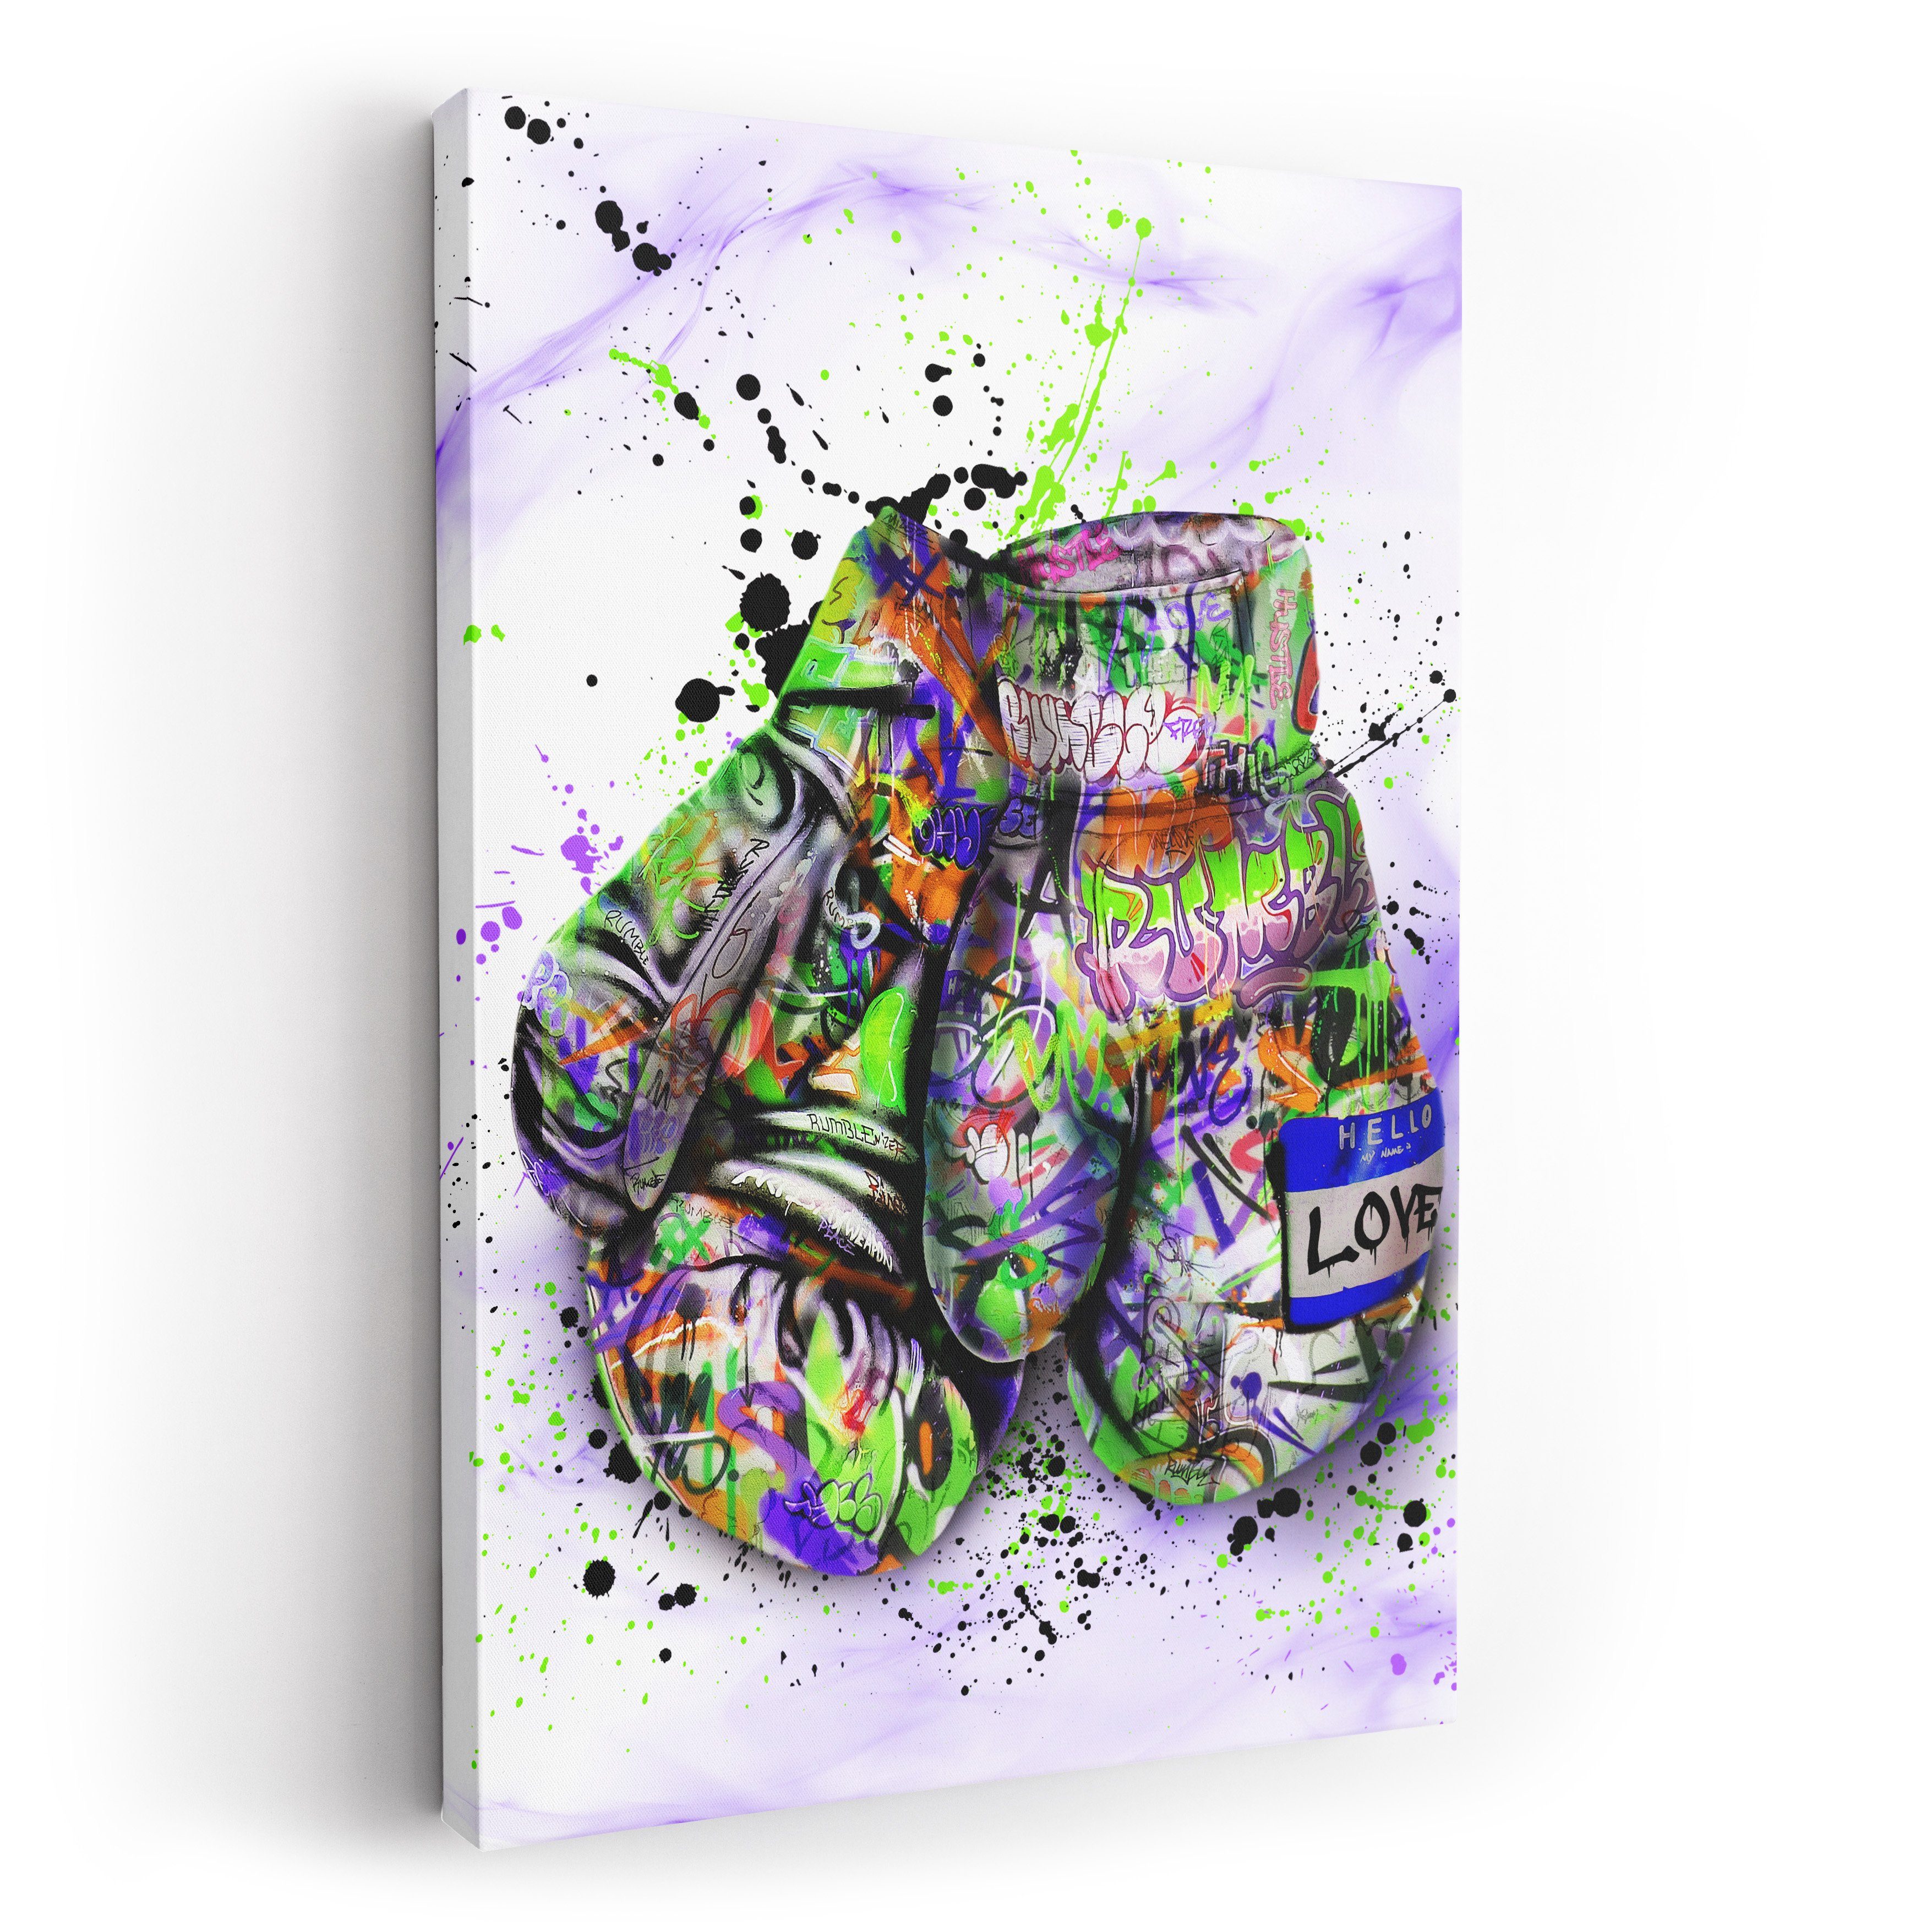 ArtMind XXL-Wandbild GRAFFITI BOXING, Premium Wandbilder als Poster & gerahmte Leinwand in verschiedenen Größen, Wall Art, Bild, Canvas